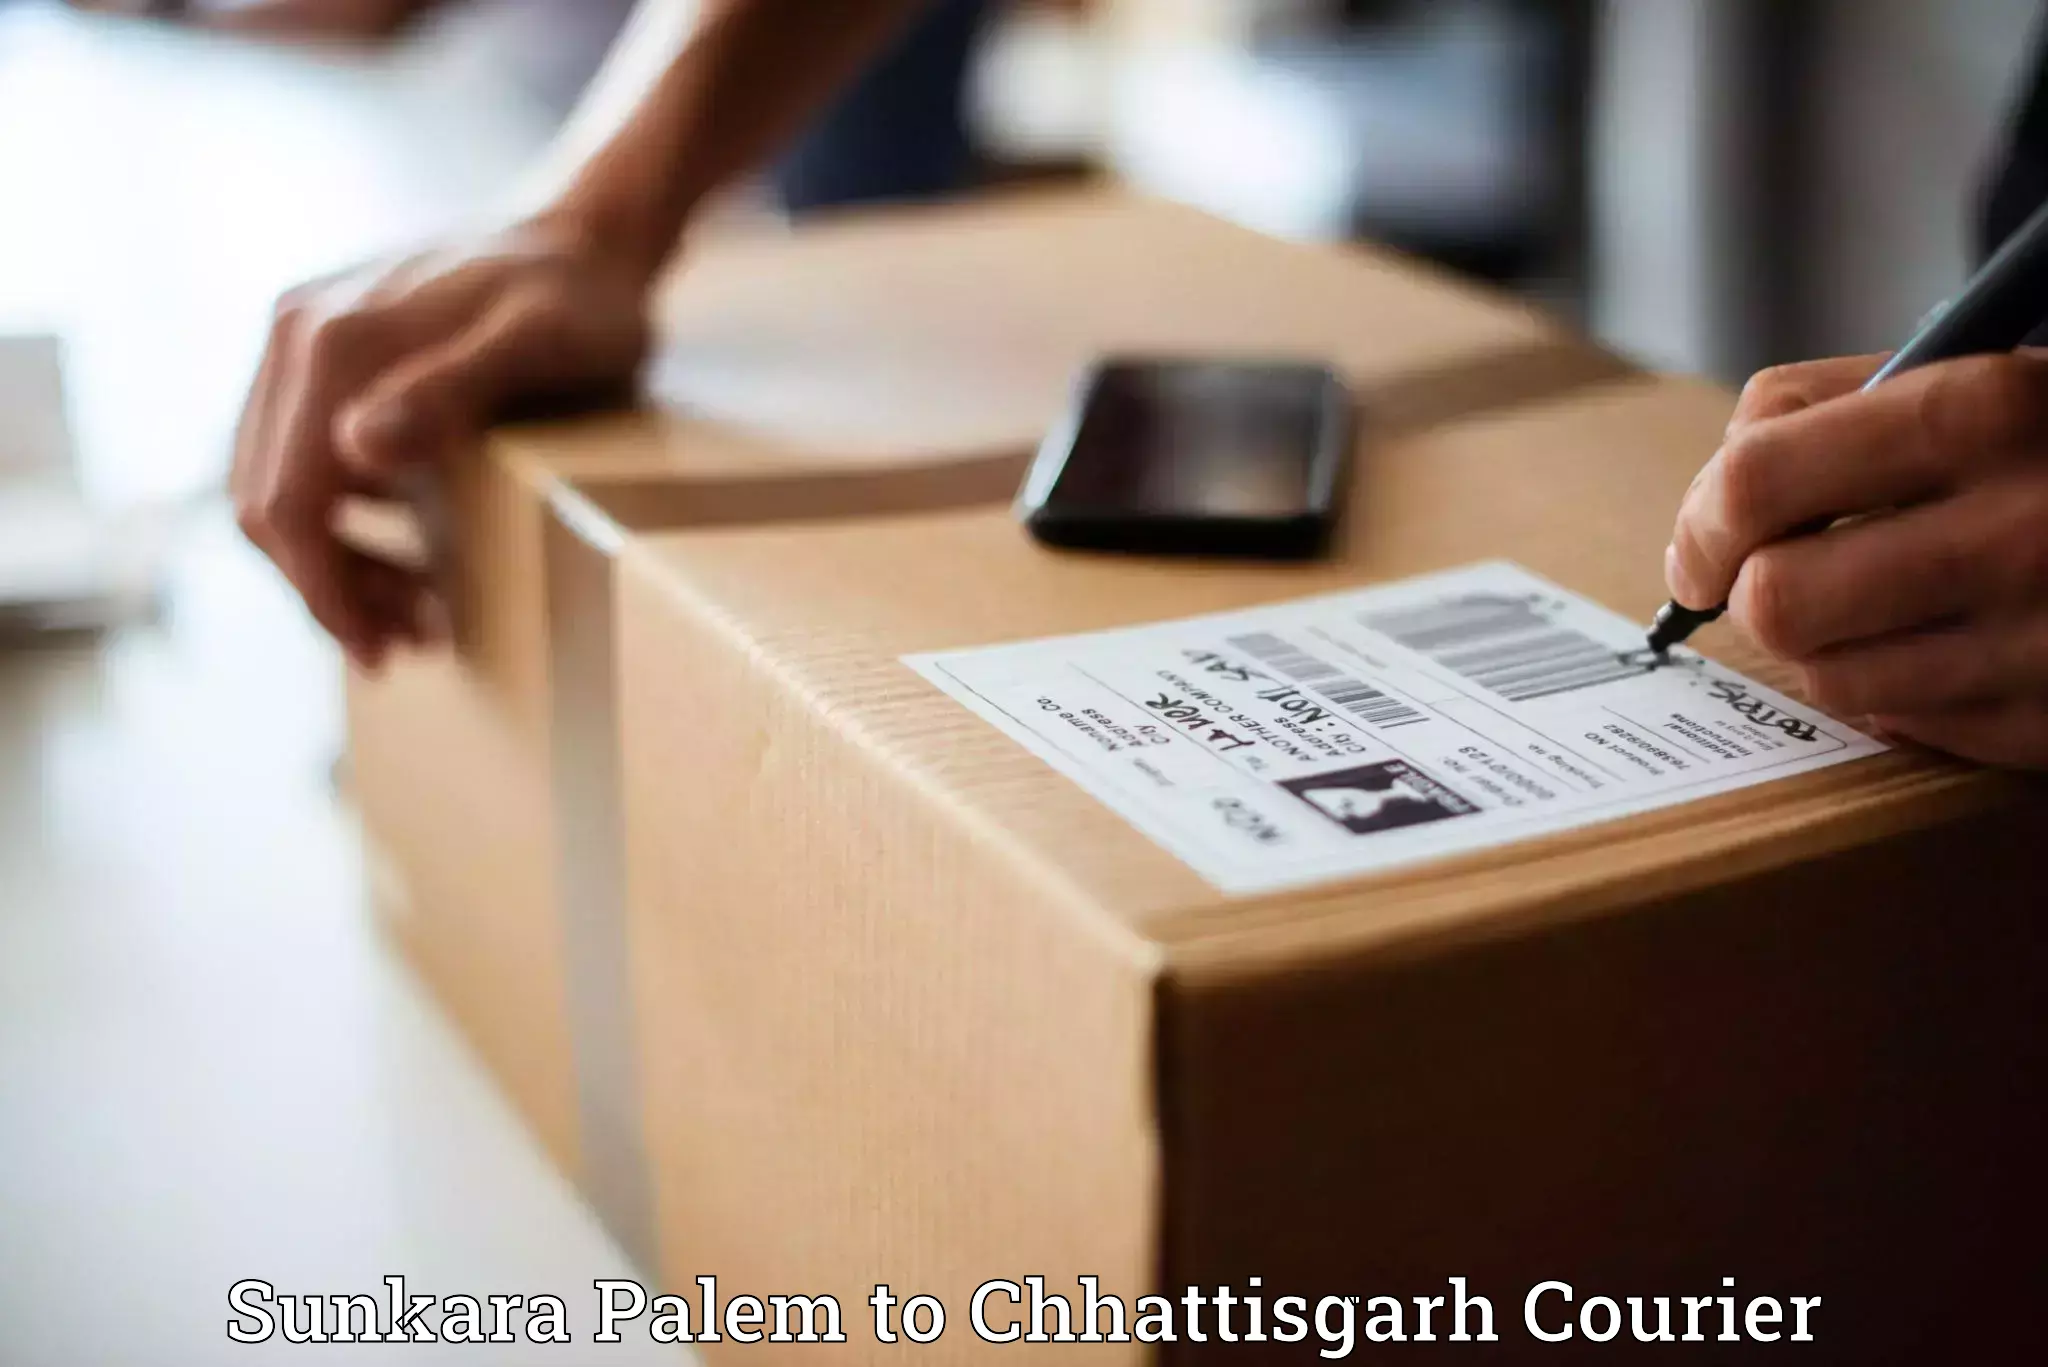 Urgent courier needs Sunkara Palem to Chhattisgarh